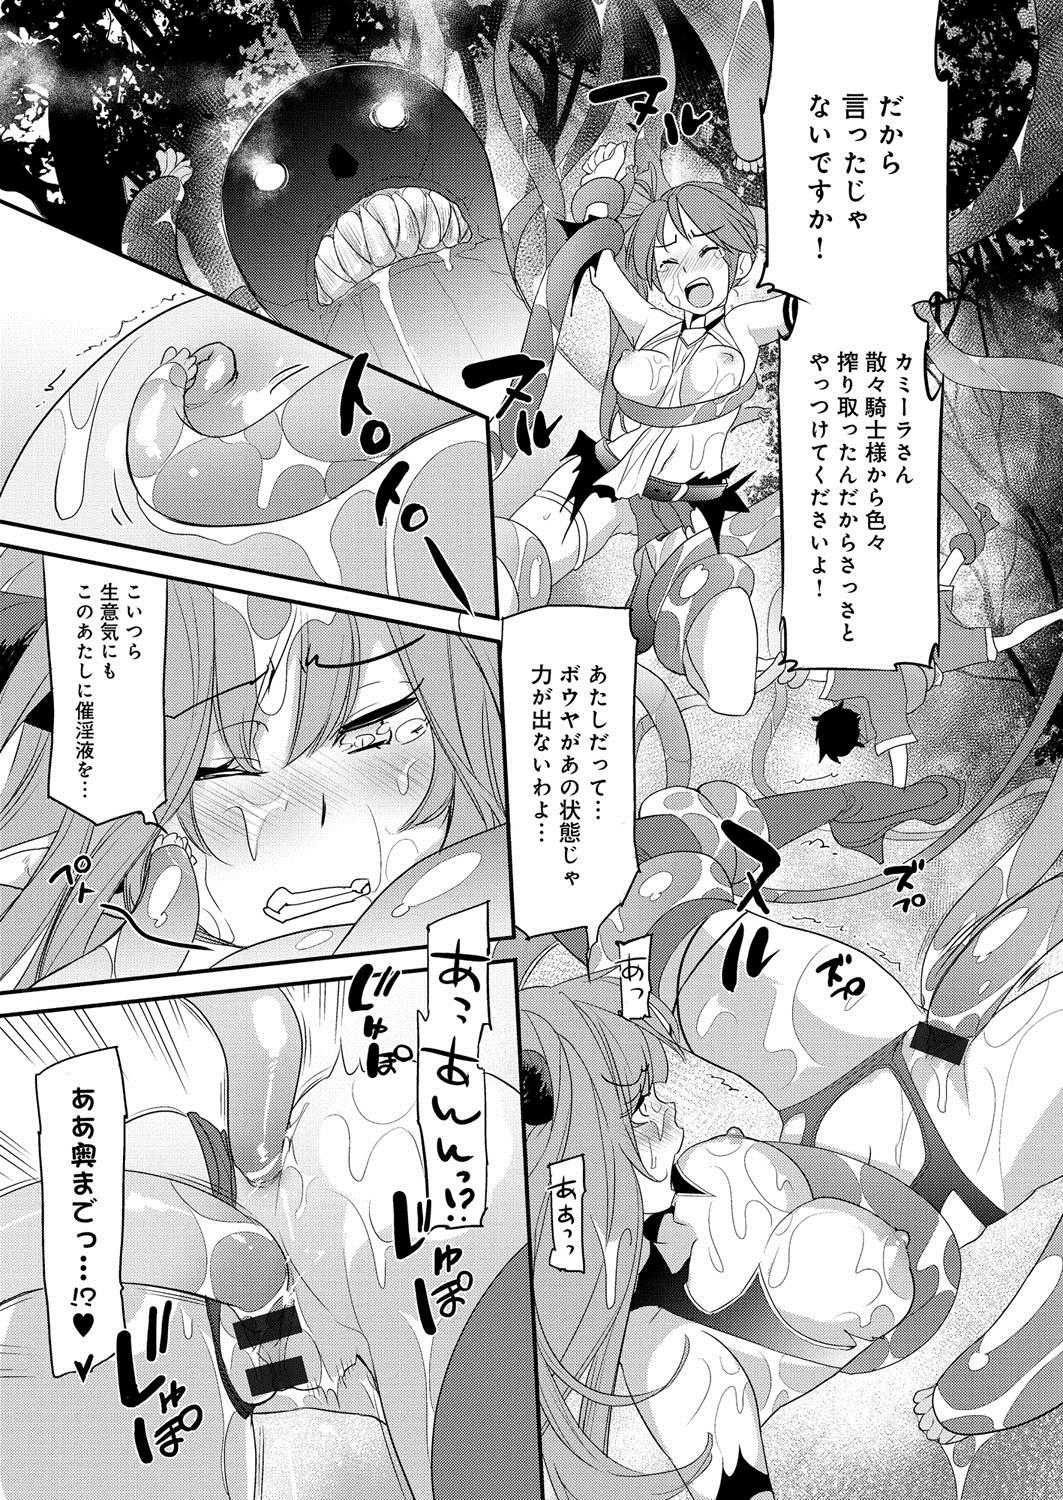 [Anthology] Lord of Valkyrie Adult - Comic Anthology R18 Handakara Saigomade... Mou, Kishi-sama no Ecchi♪ 49